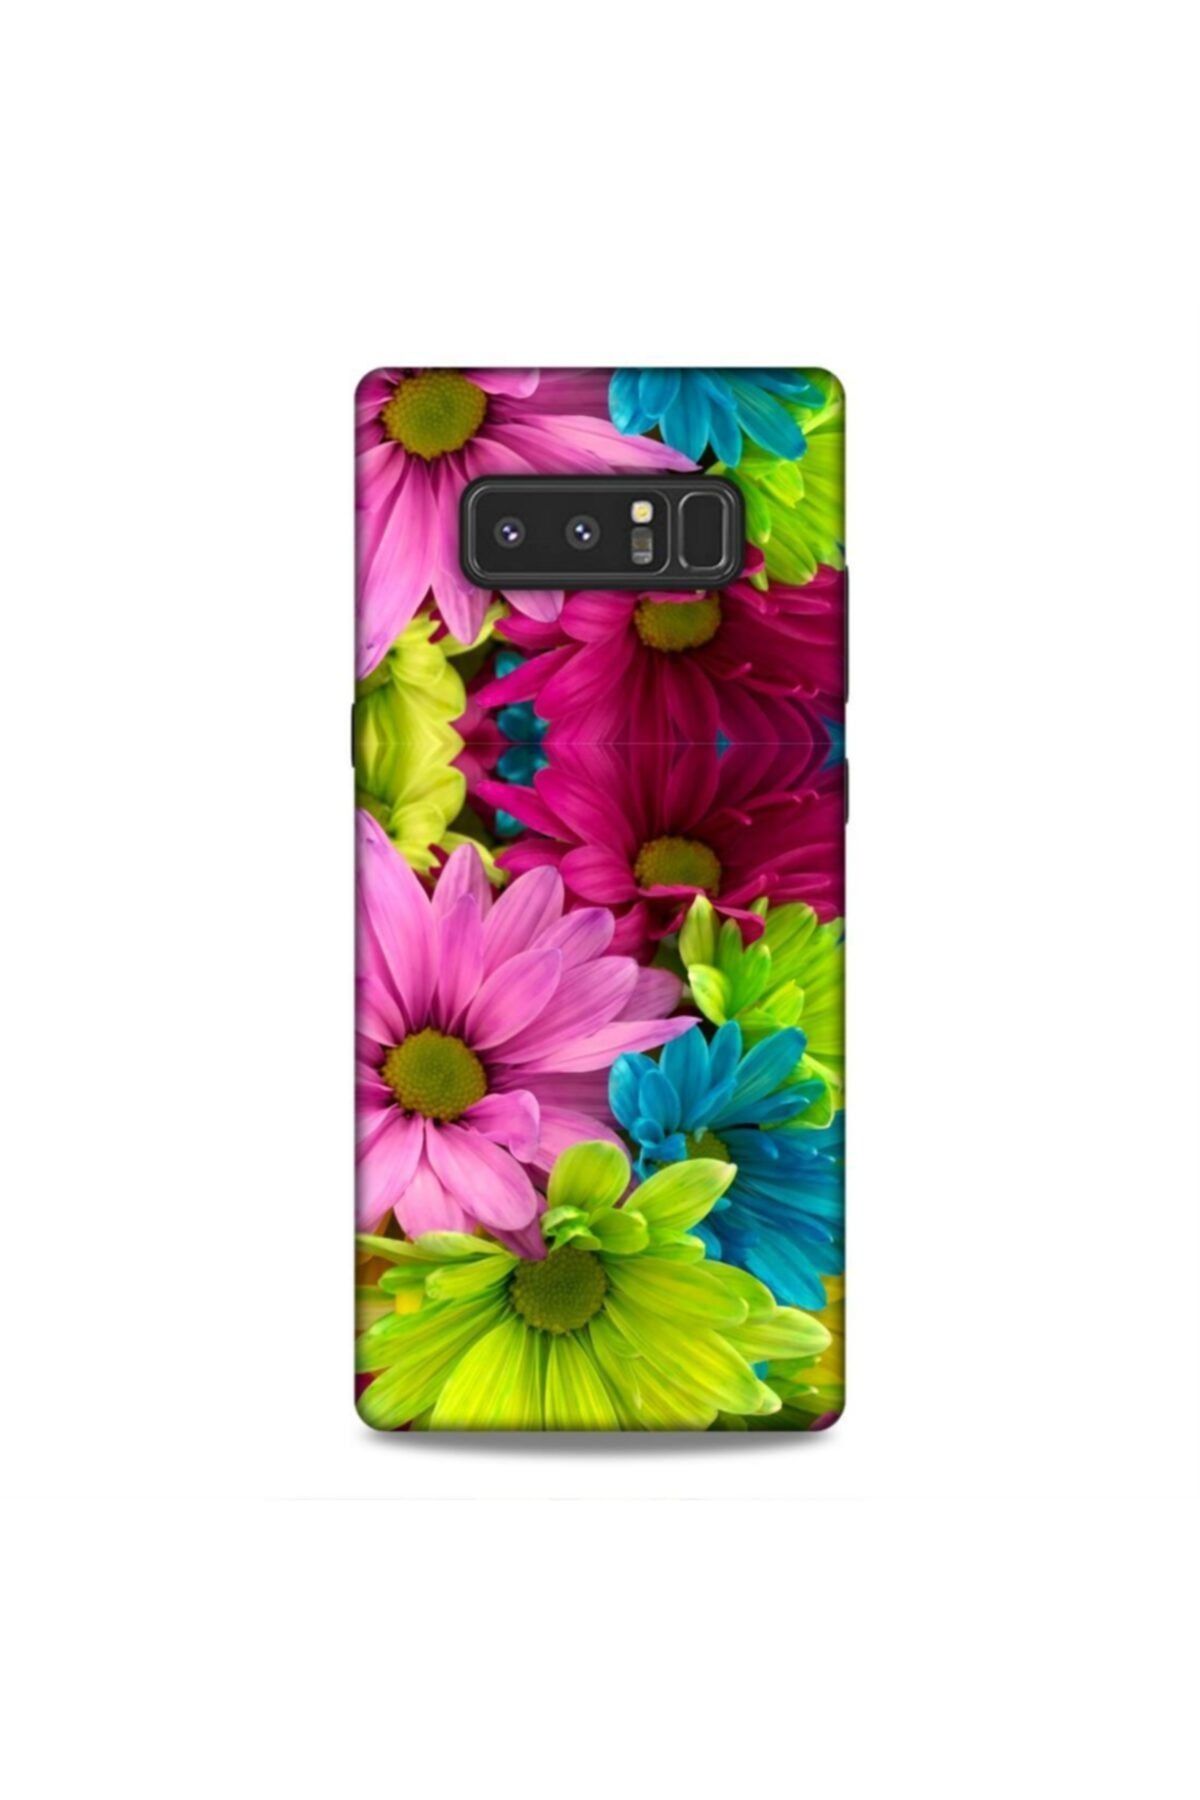 Pickcase Samsung Galaxy Note 8 Desenli Arka Kapak Renkli Çiçekler Kılıf